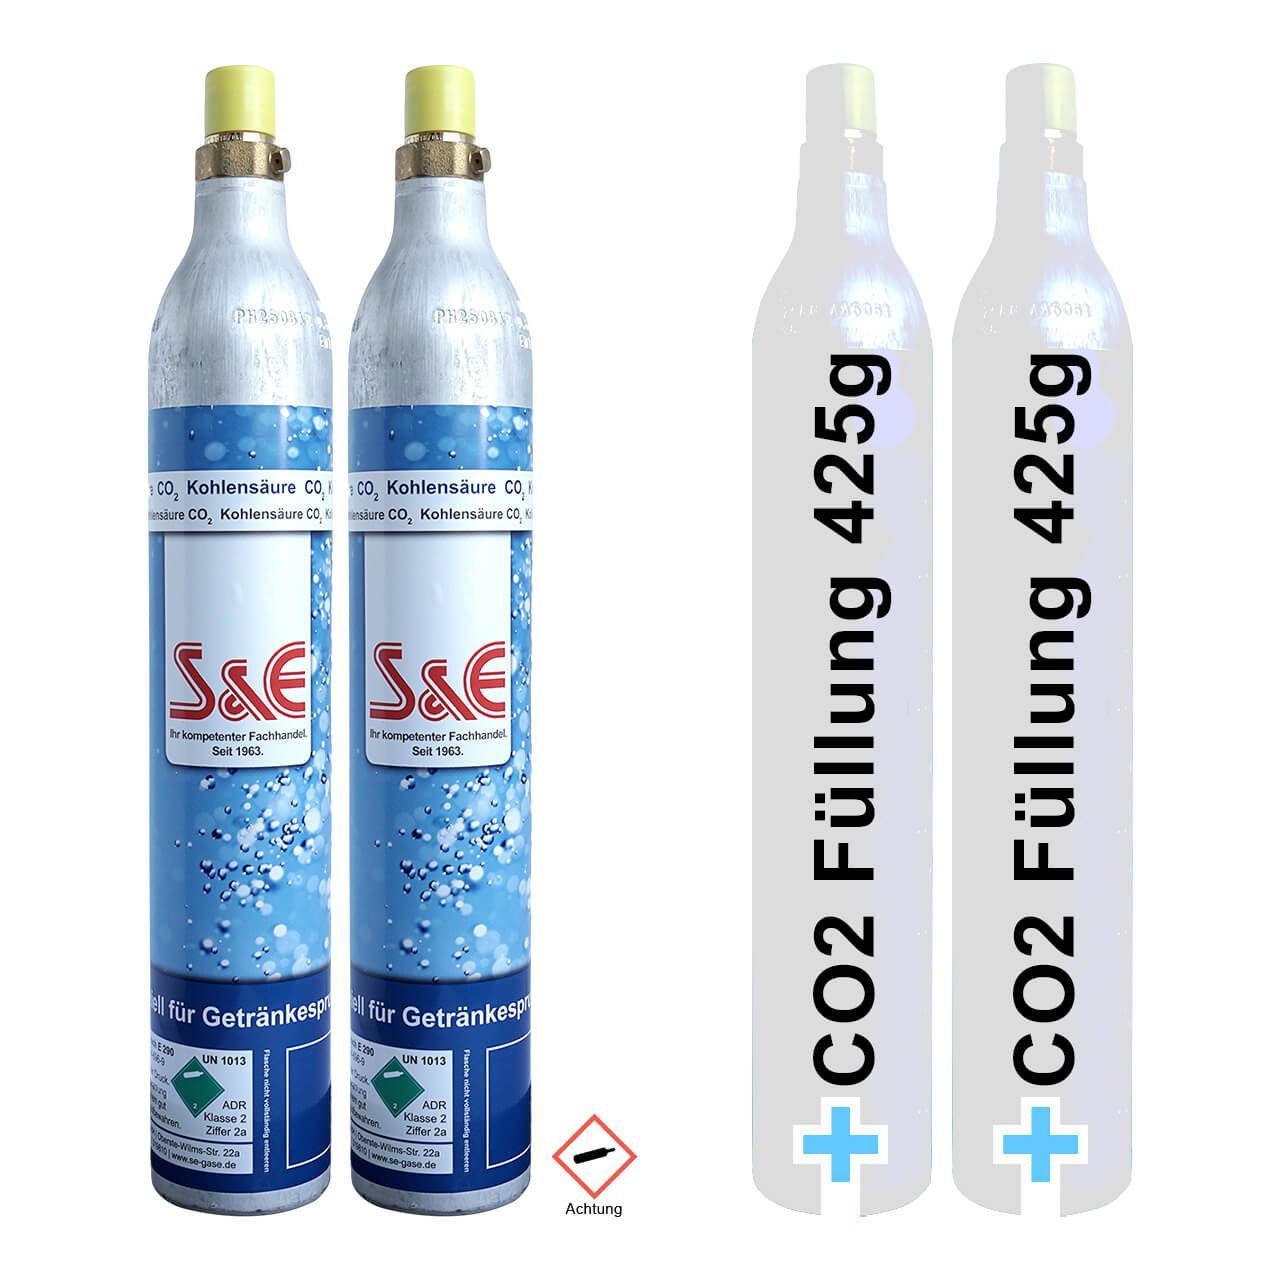 CAGO Wassersprudler Flasche, (2-tlg), 2 x CO2 Zylinder Sodastream Flasche  für 60l Sprudel-Wasser 425g kompatibel mit diversen Wasser-Sprudlern -  Kohlensäure-Flasche - Kartusche online kaufen | OTTO